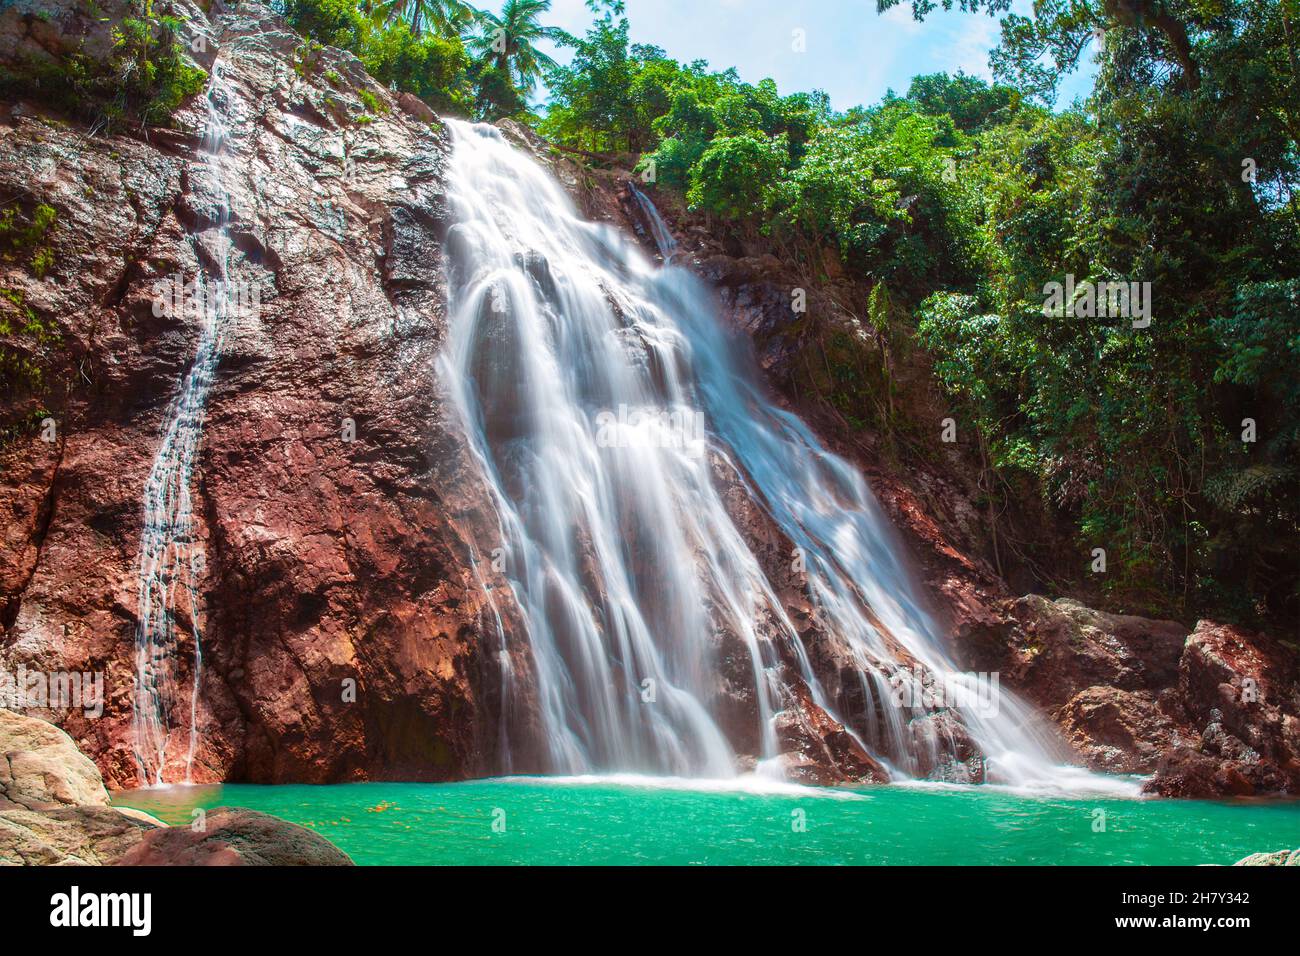 Na Muang 1 waterfall, Koh Samui, Thailand Stock Photo